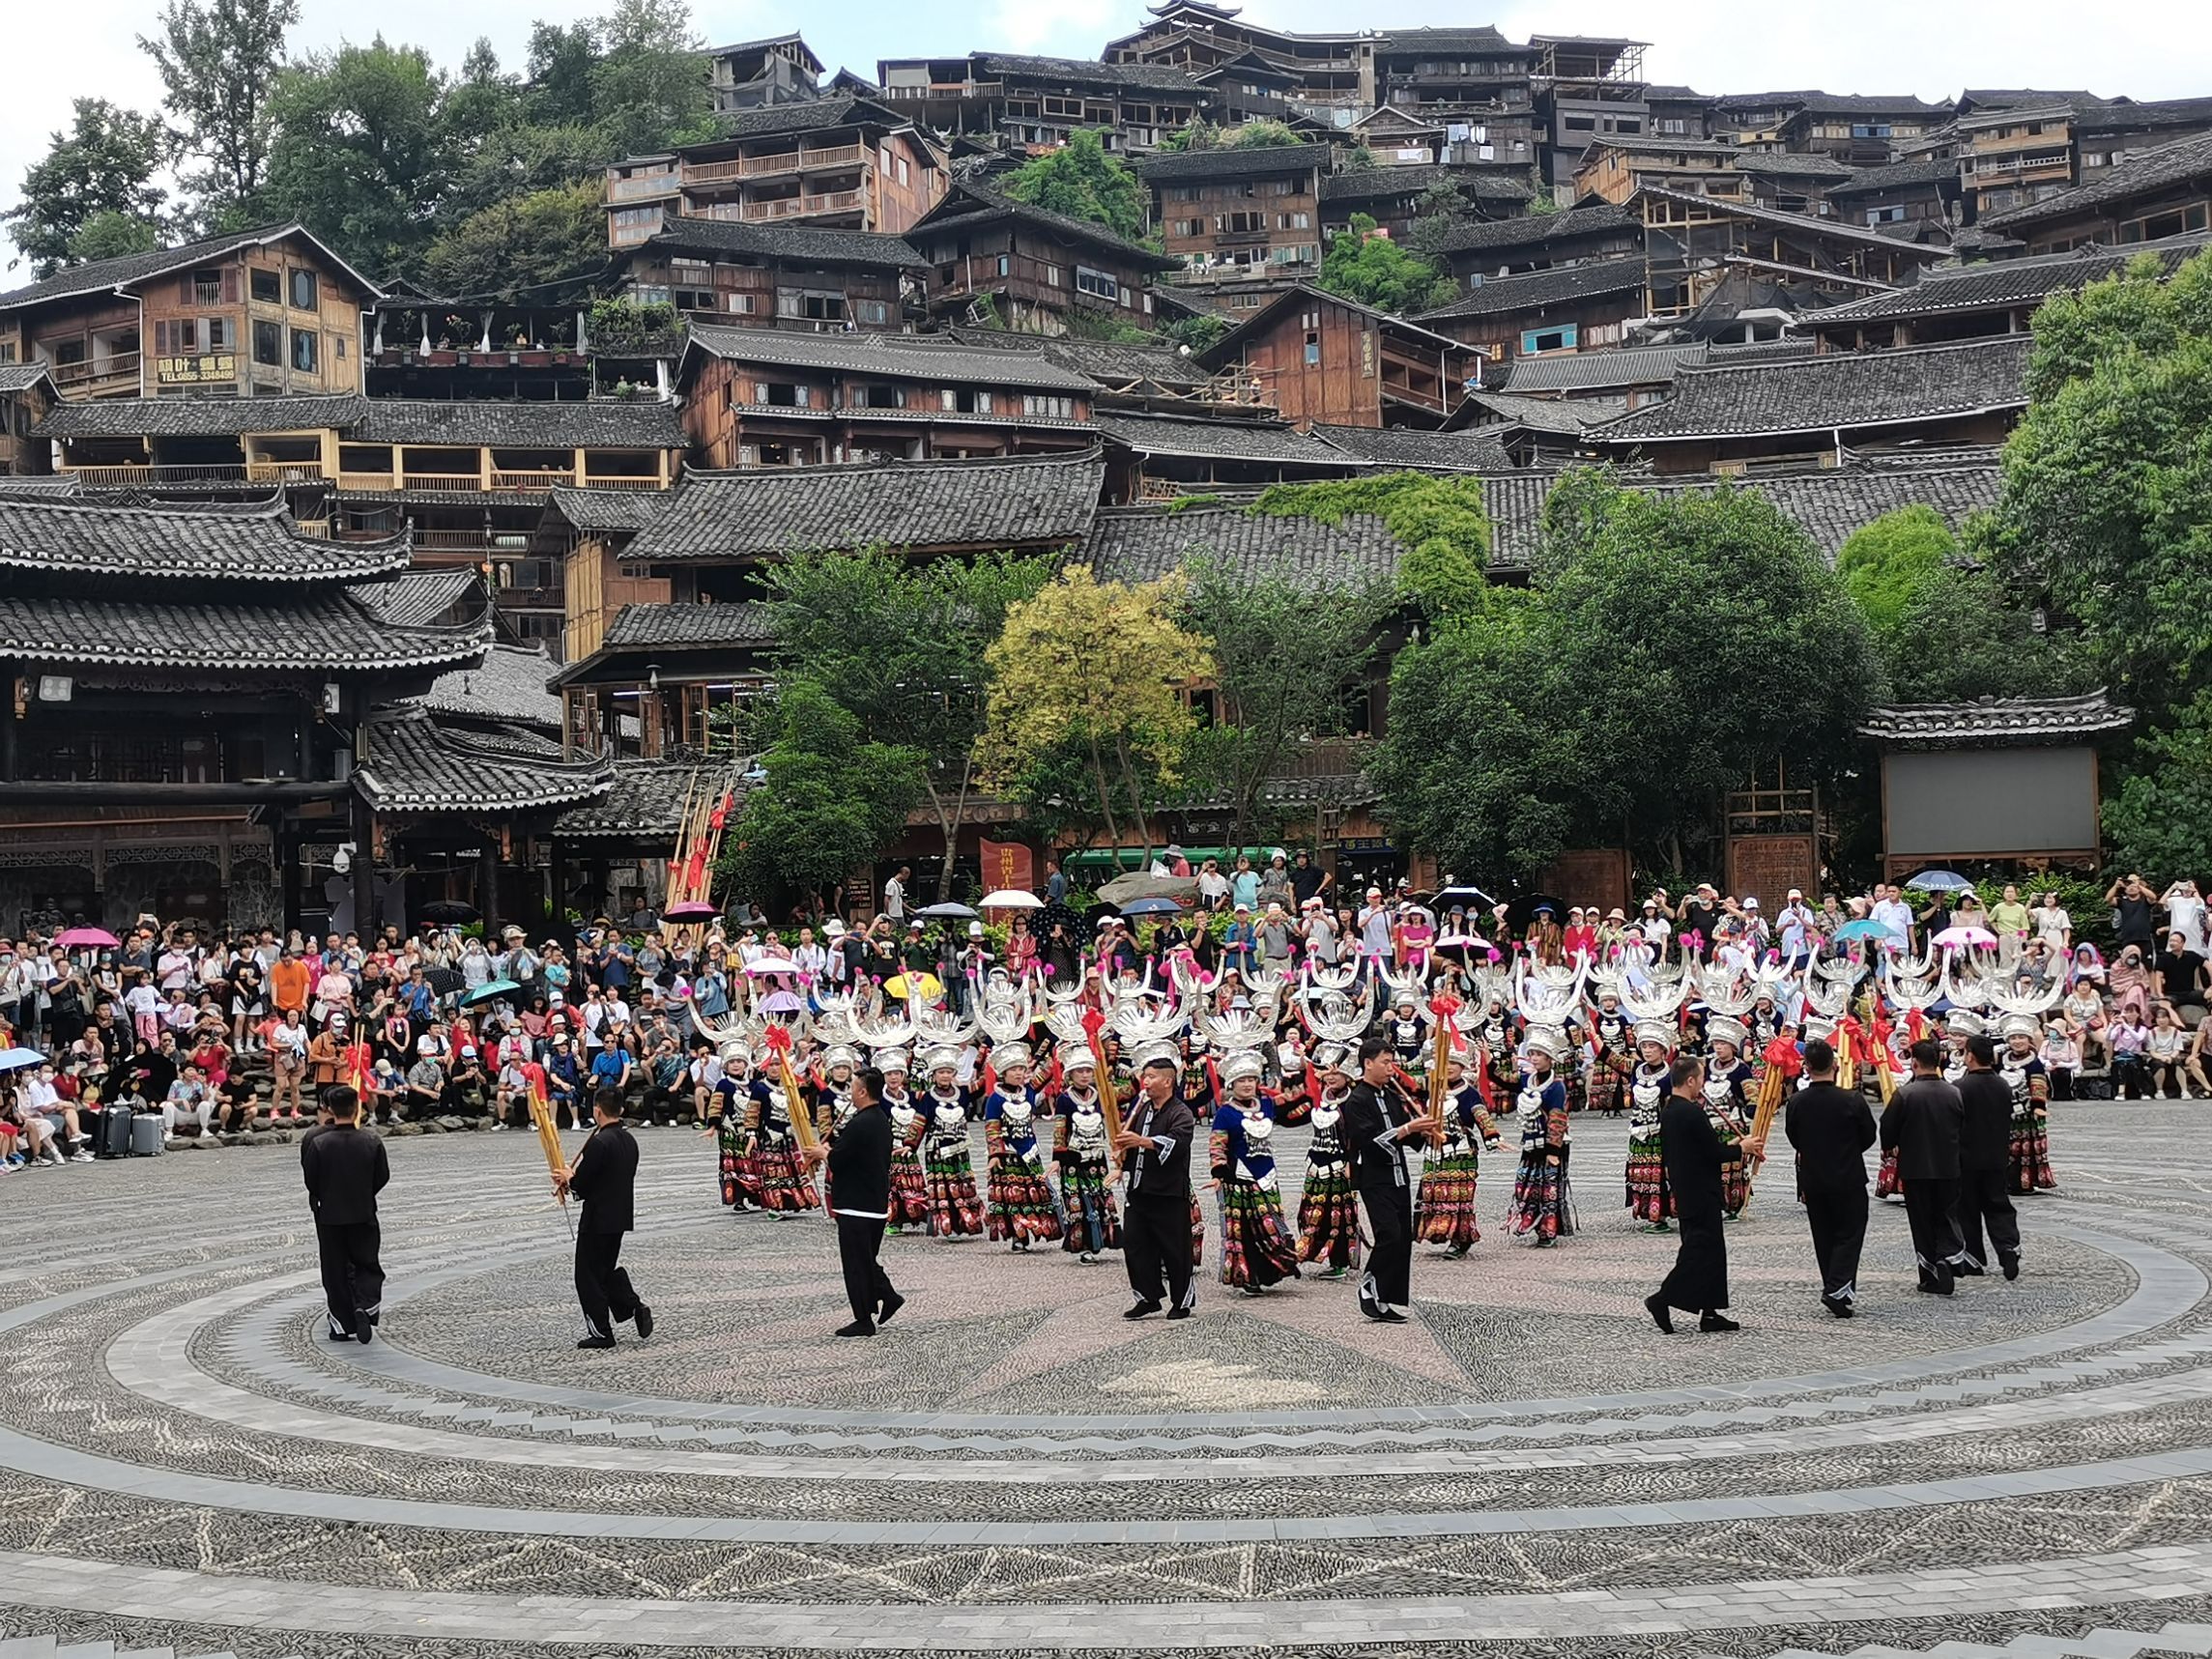 Guizhou Tour